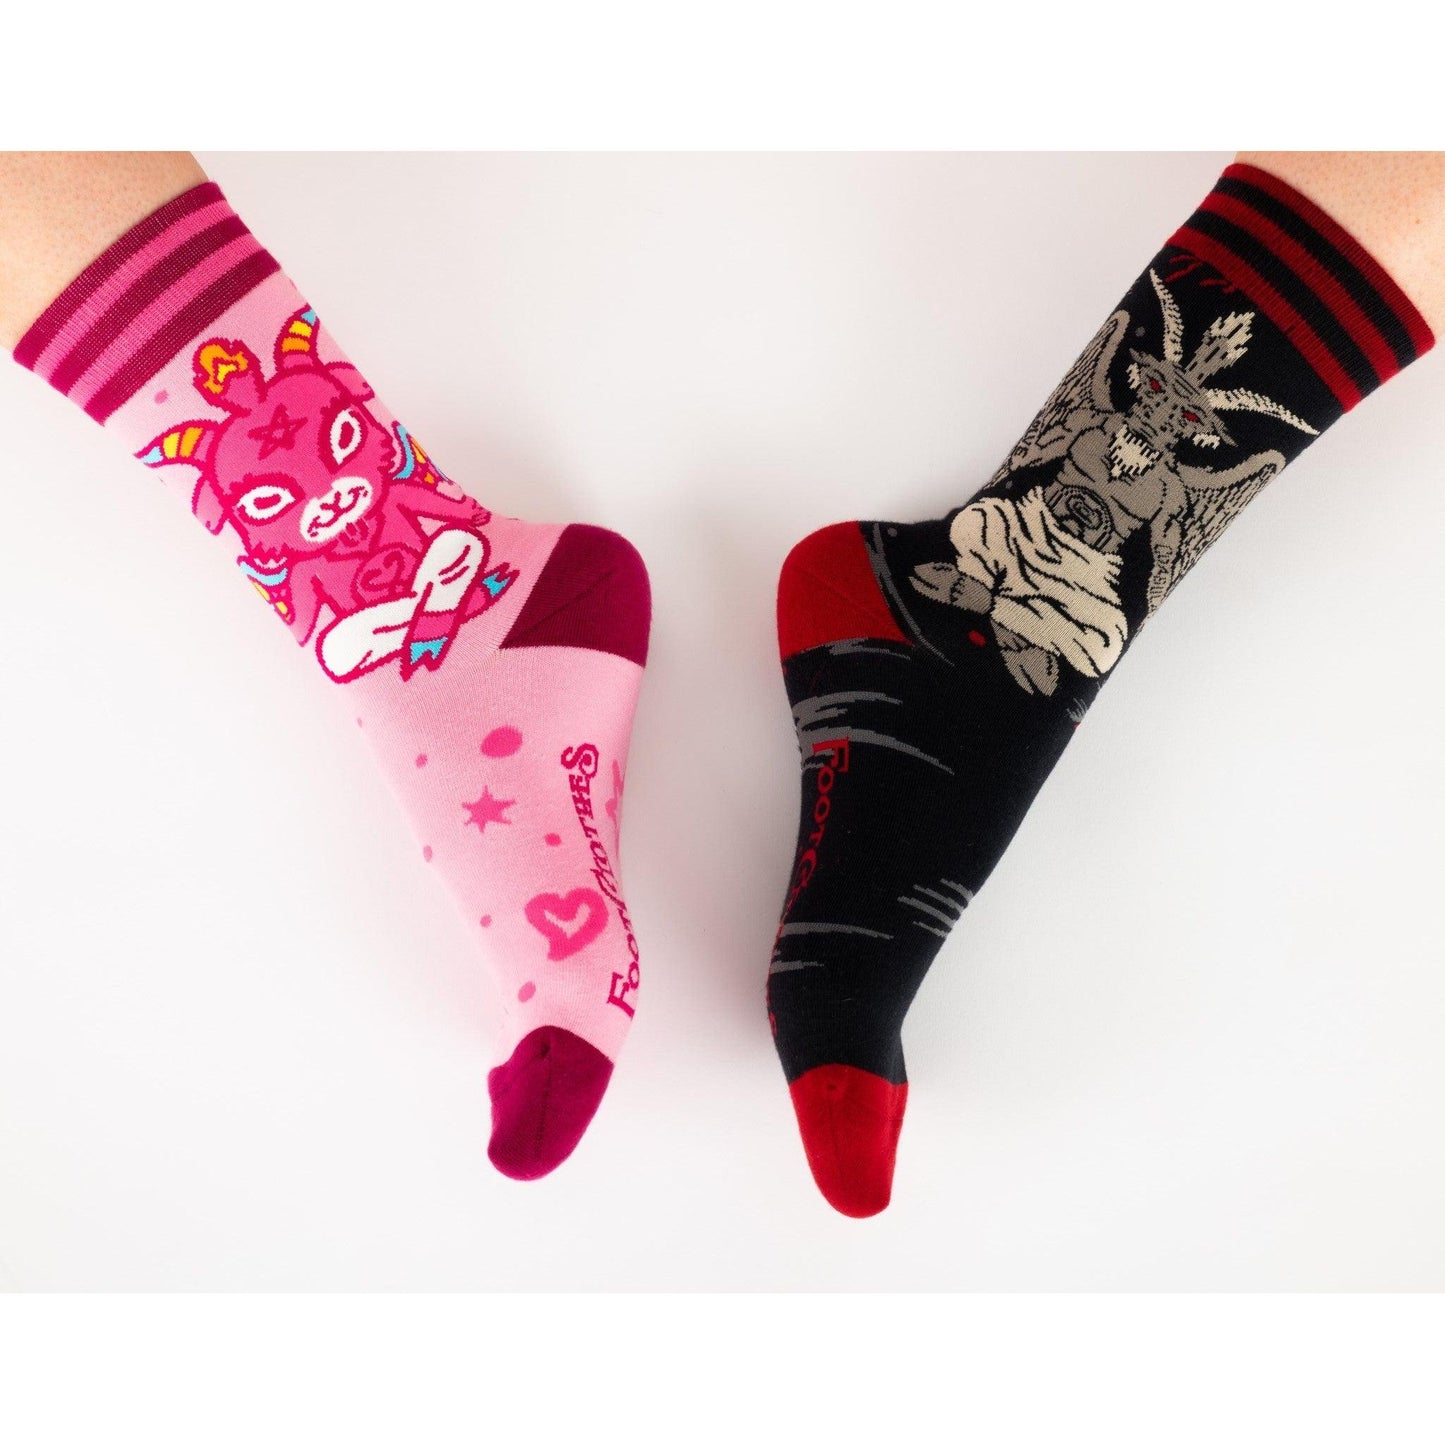 Cute Baphomet Socks in Pink